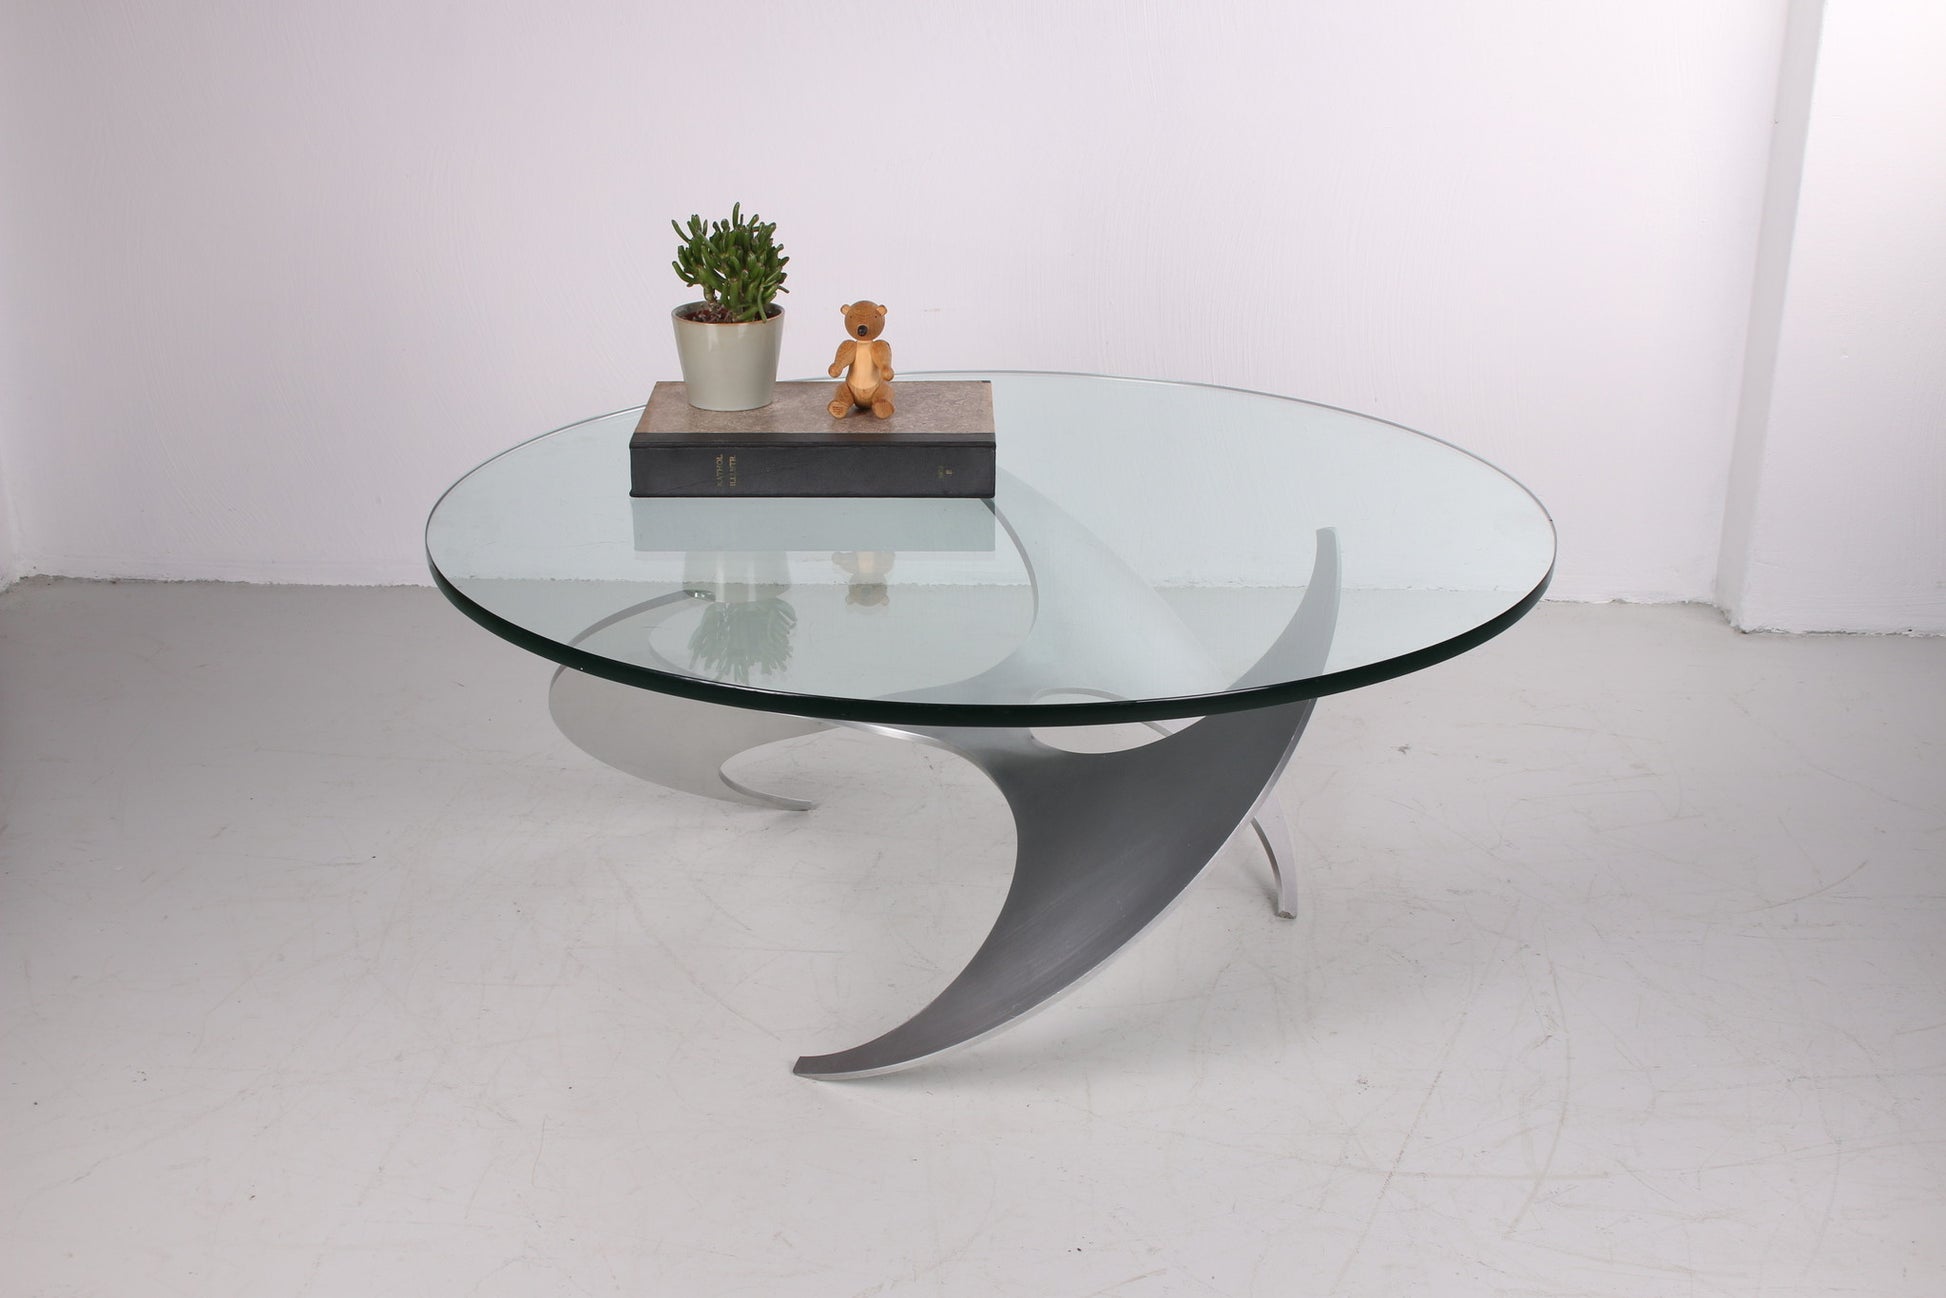 Propeller salon tafel Design van Knut Hesterberg jaren60 sfeerfoto